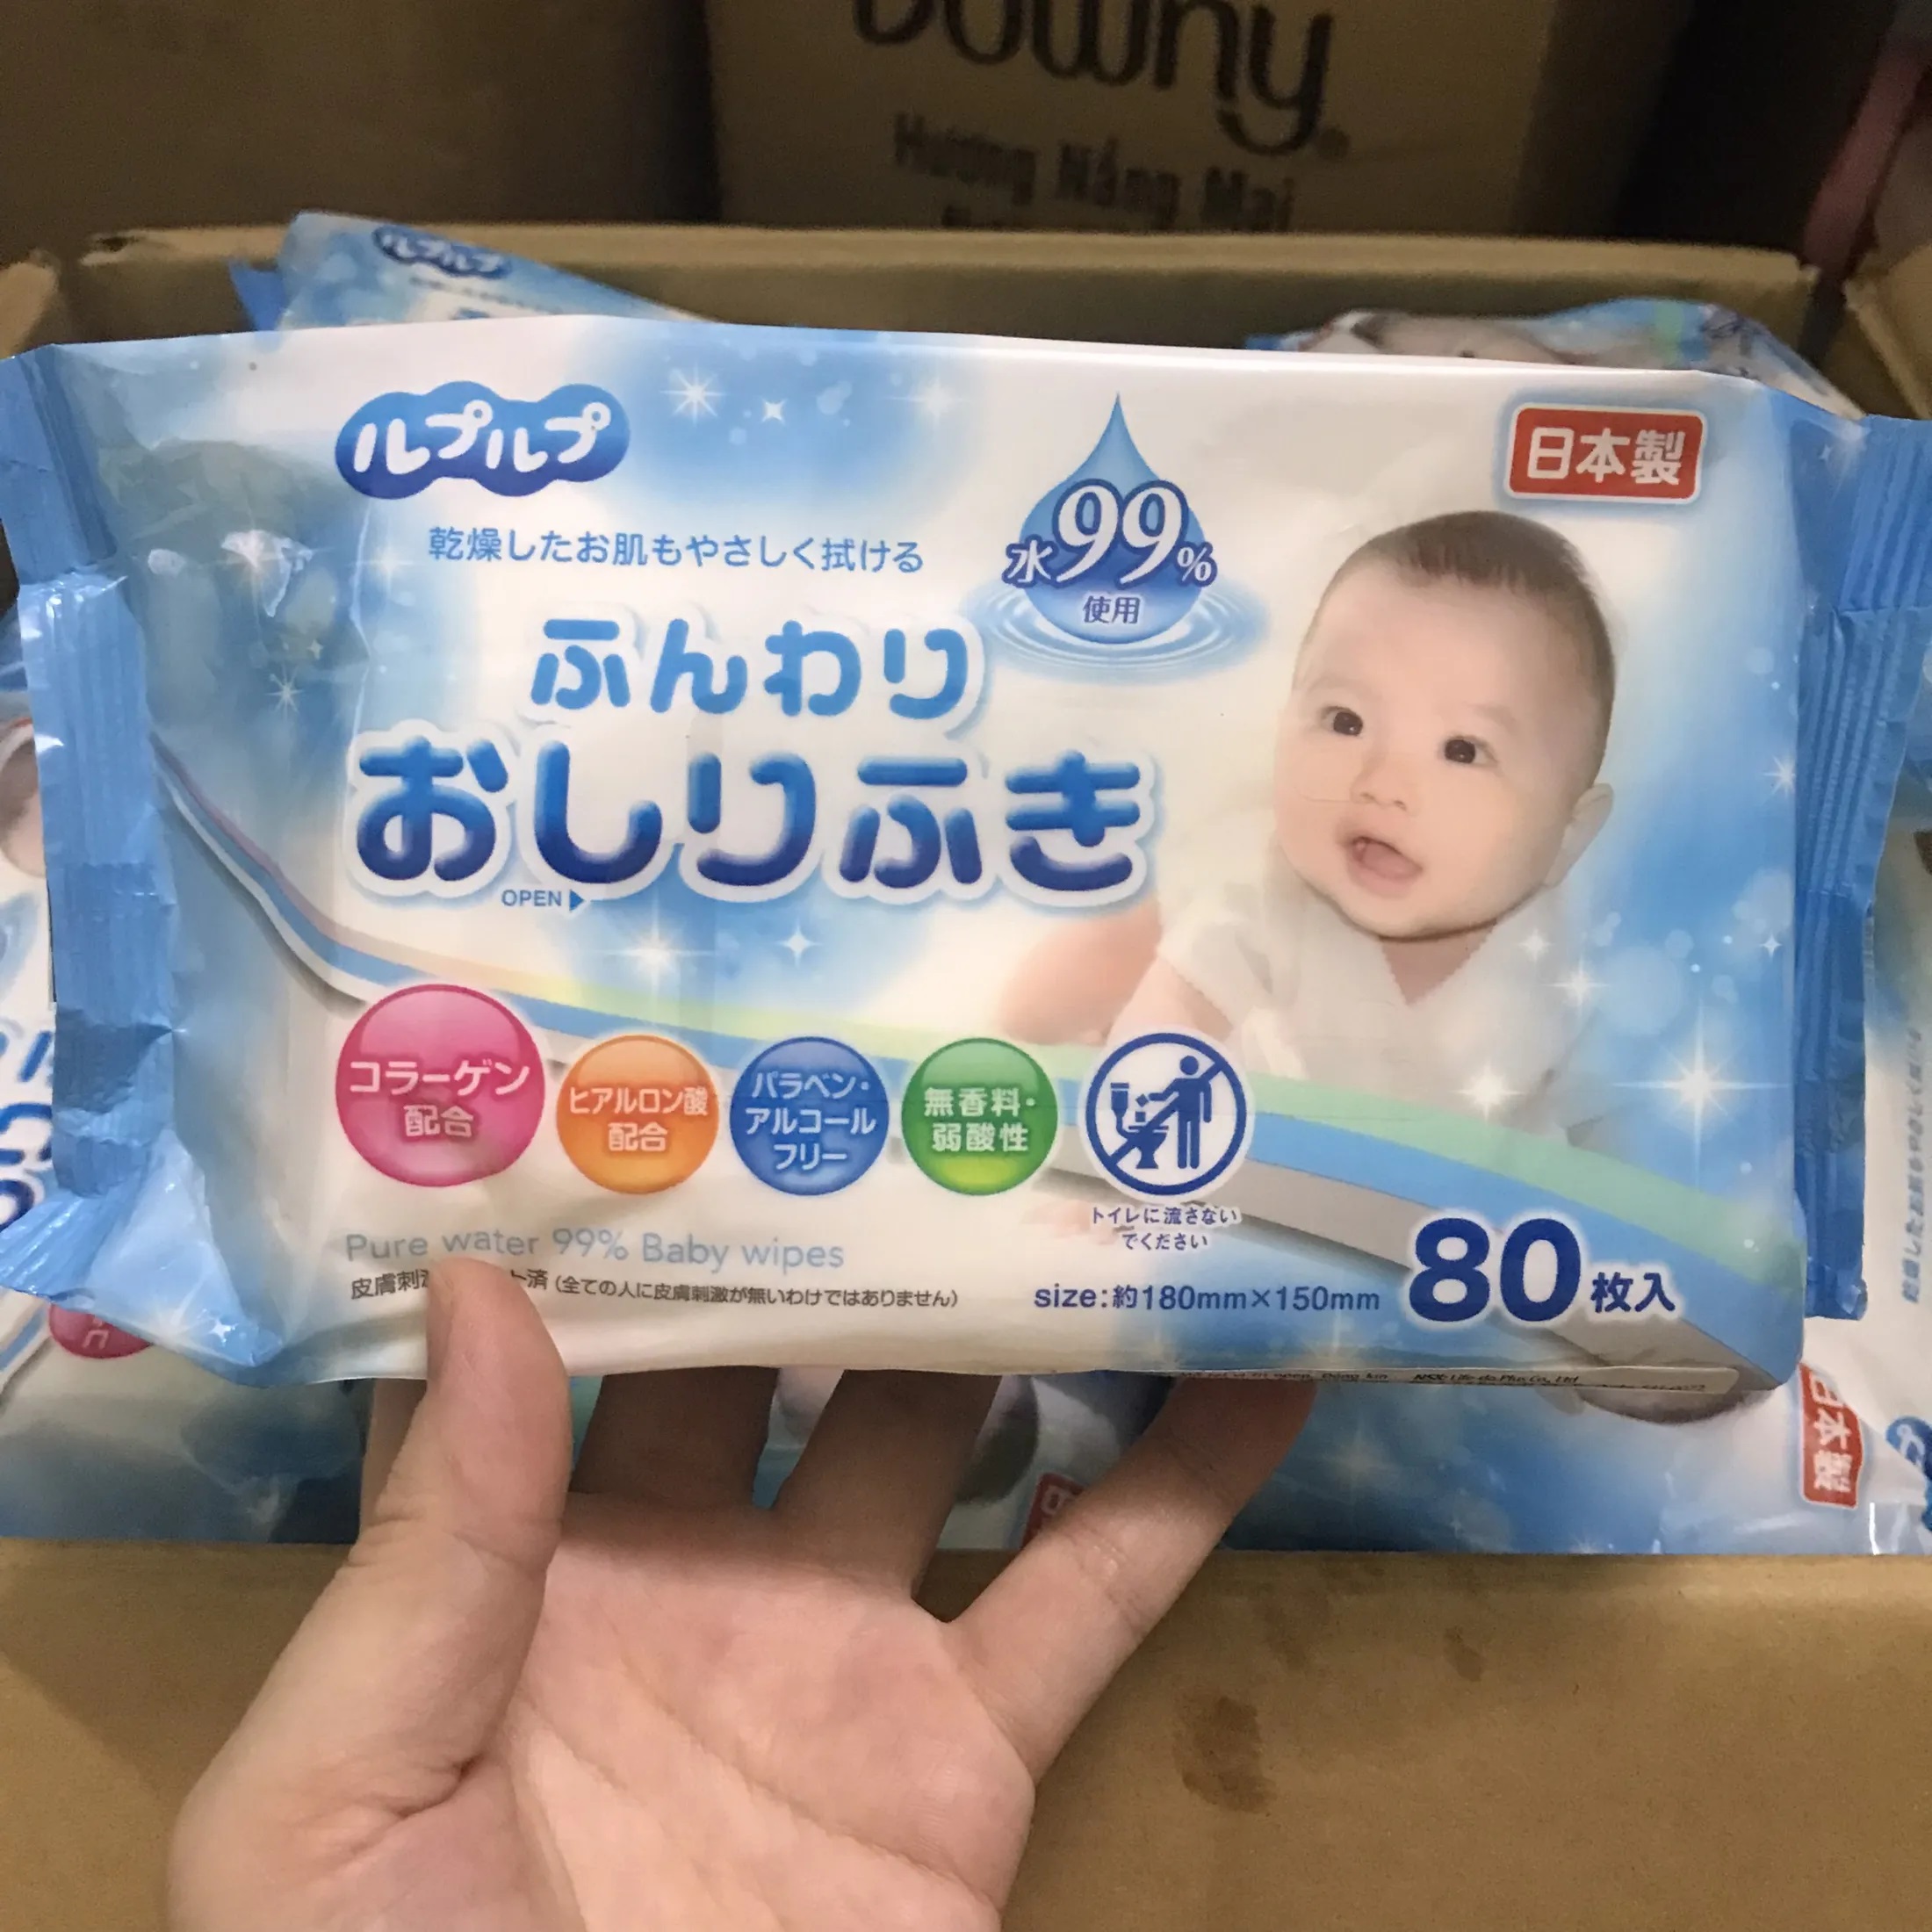 Khăn giấy ướt cho bé và gia đình sản xuất tại Nhật Bản LD-210V 80 tờ